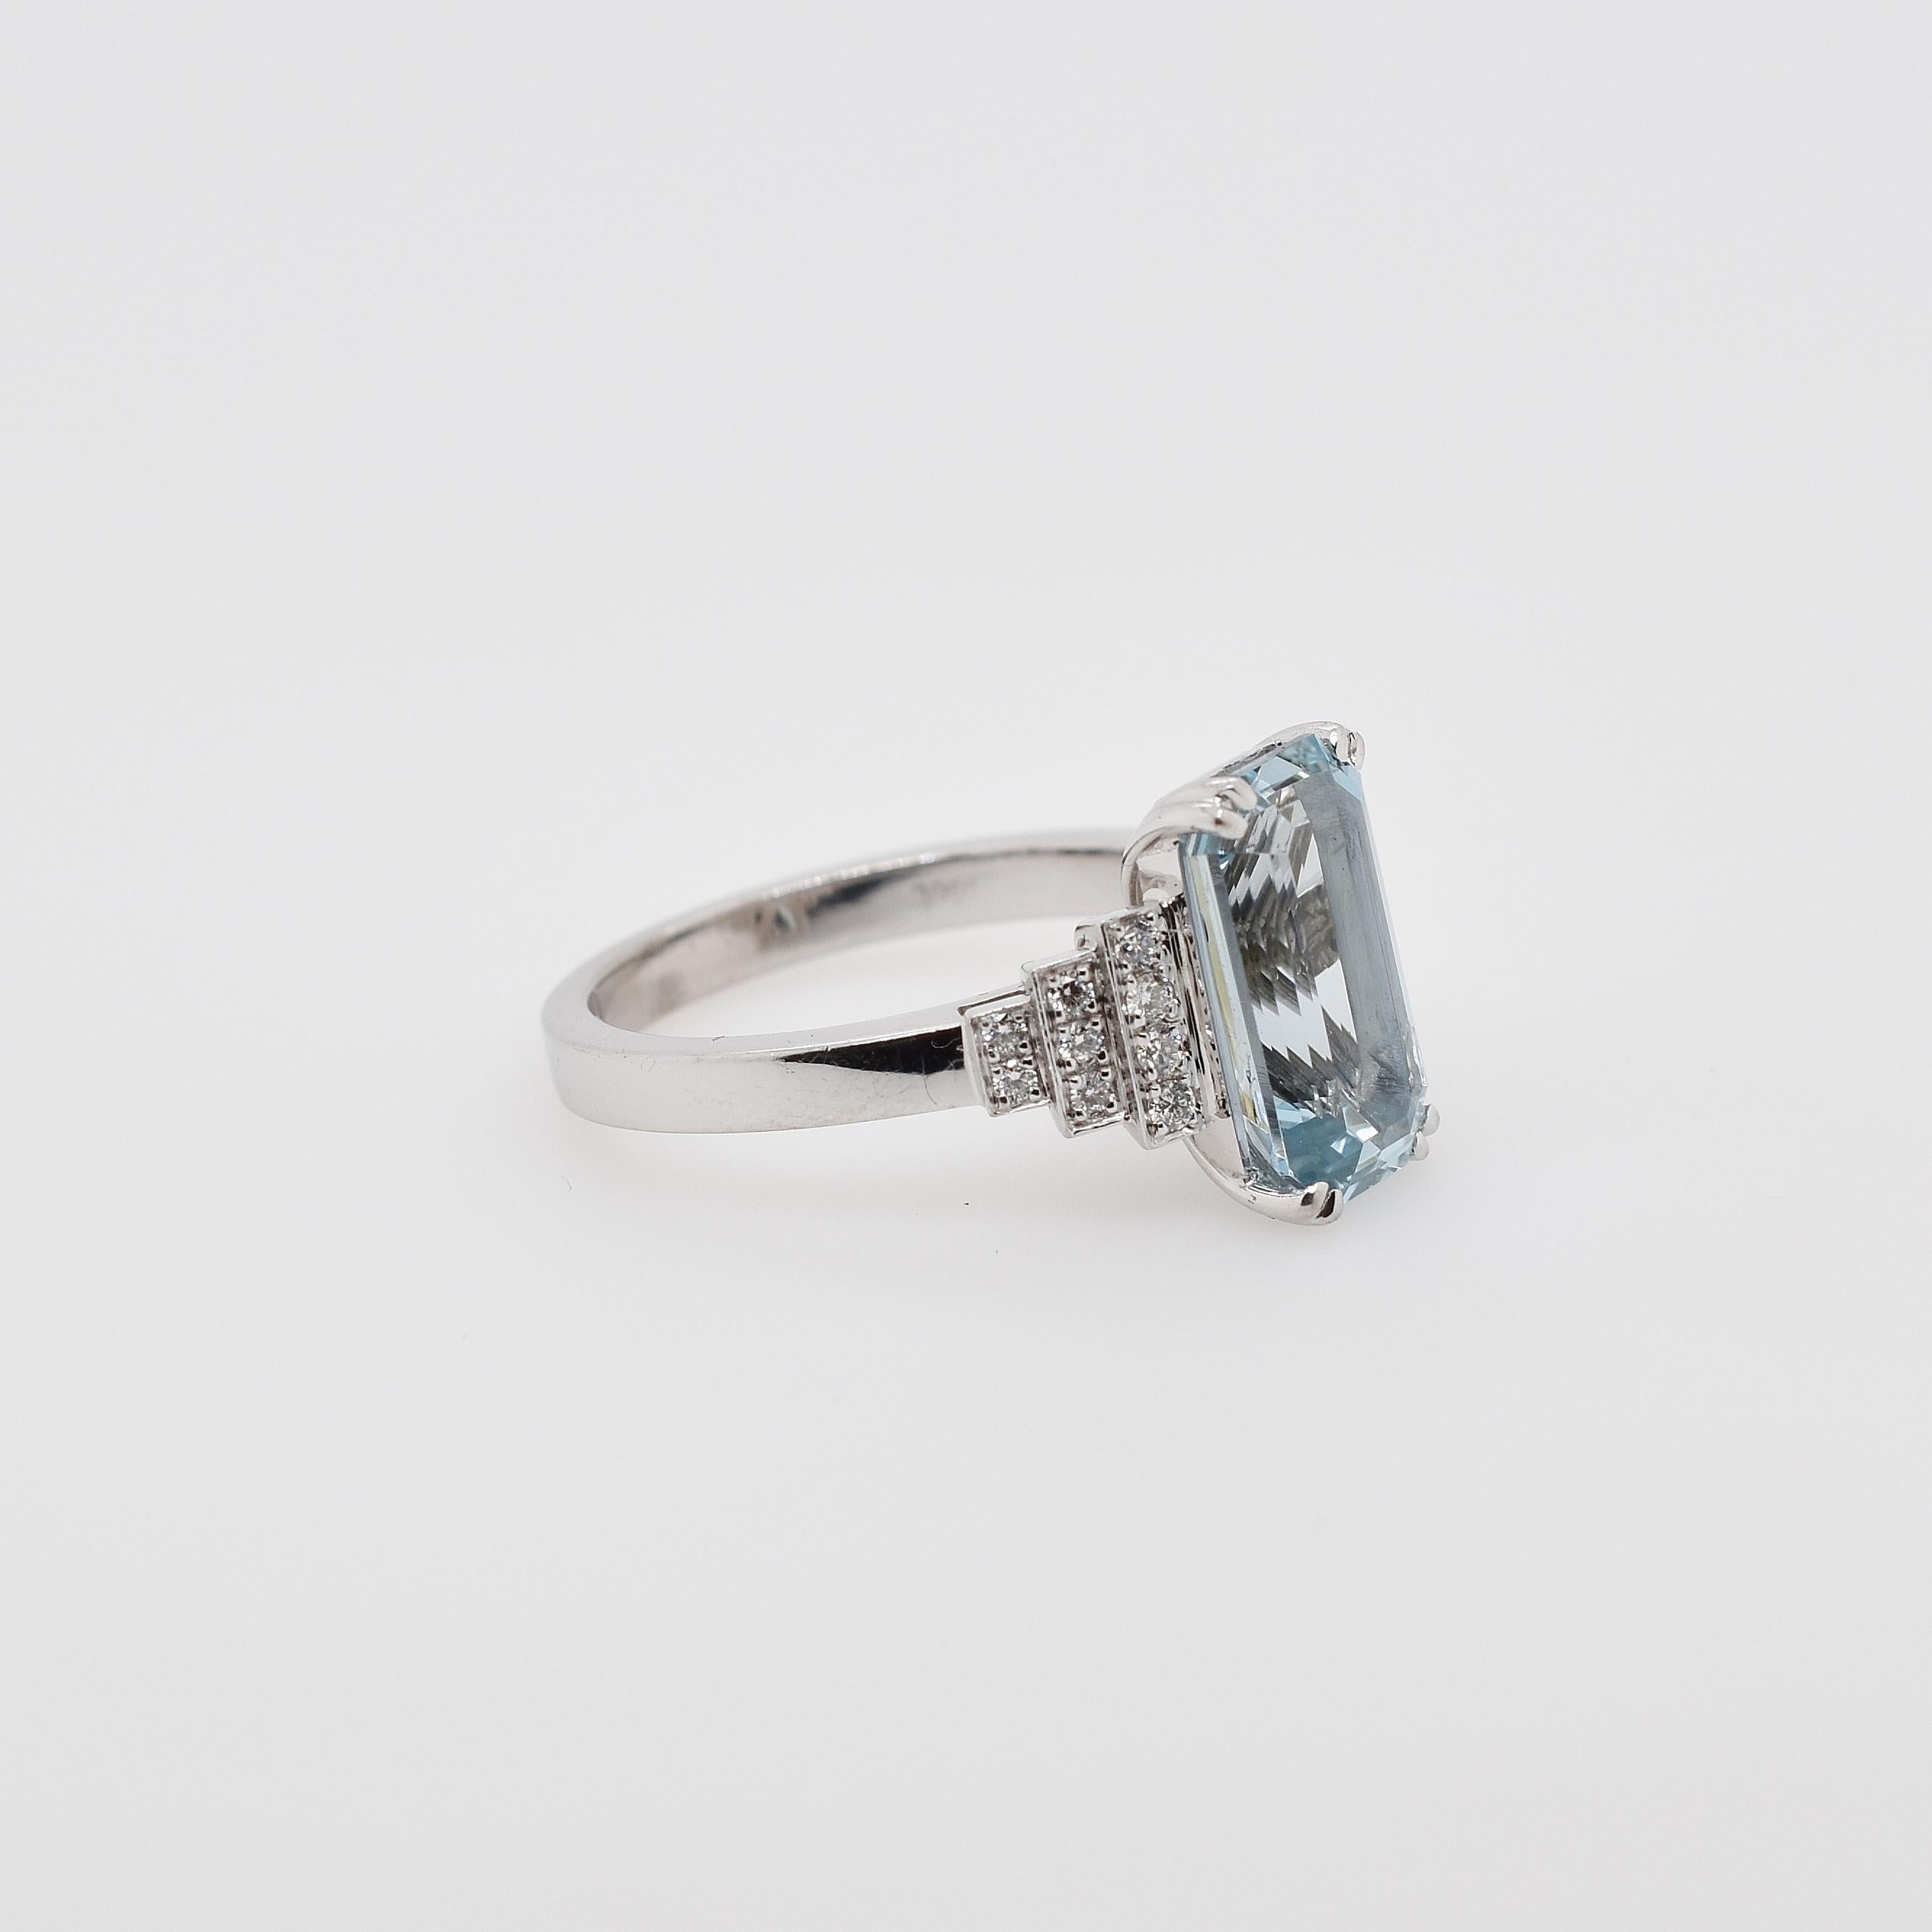 18 Carat White Gold Emerald Cut Aquamarine and Brilliant Cut Diamond Ring (Art déco)